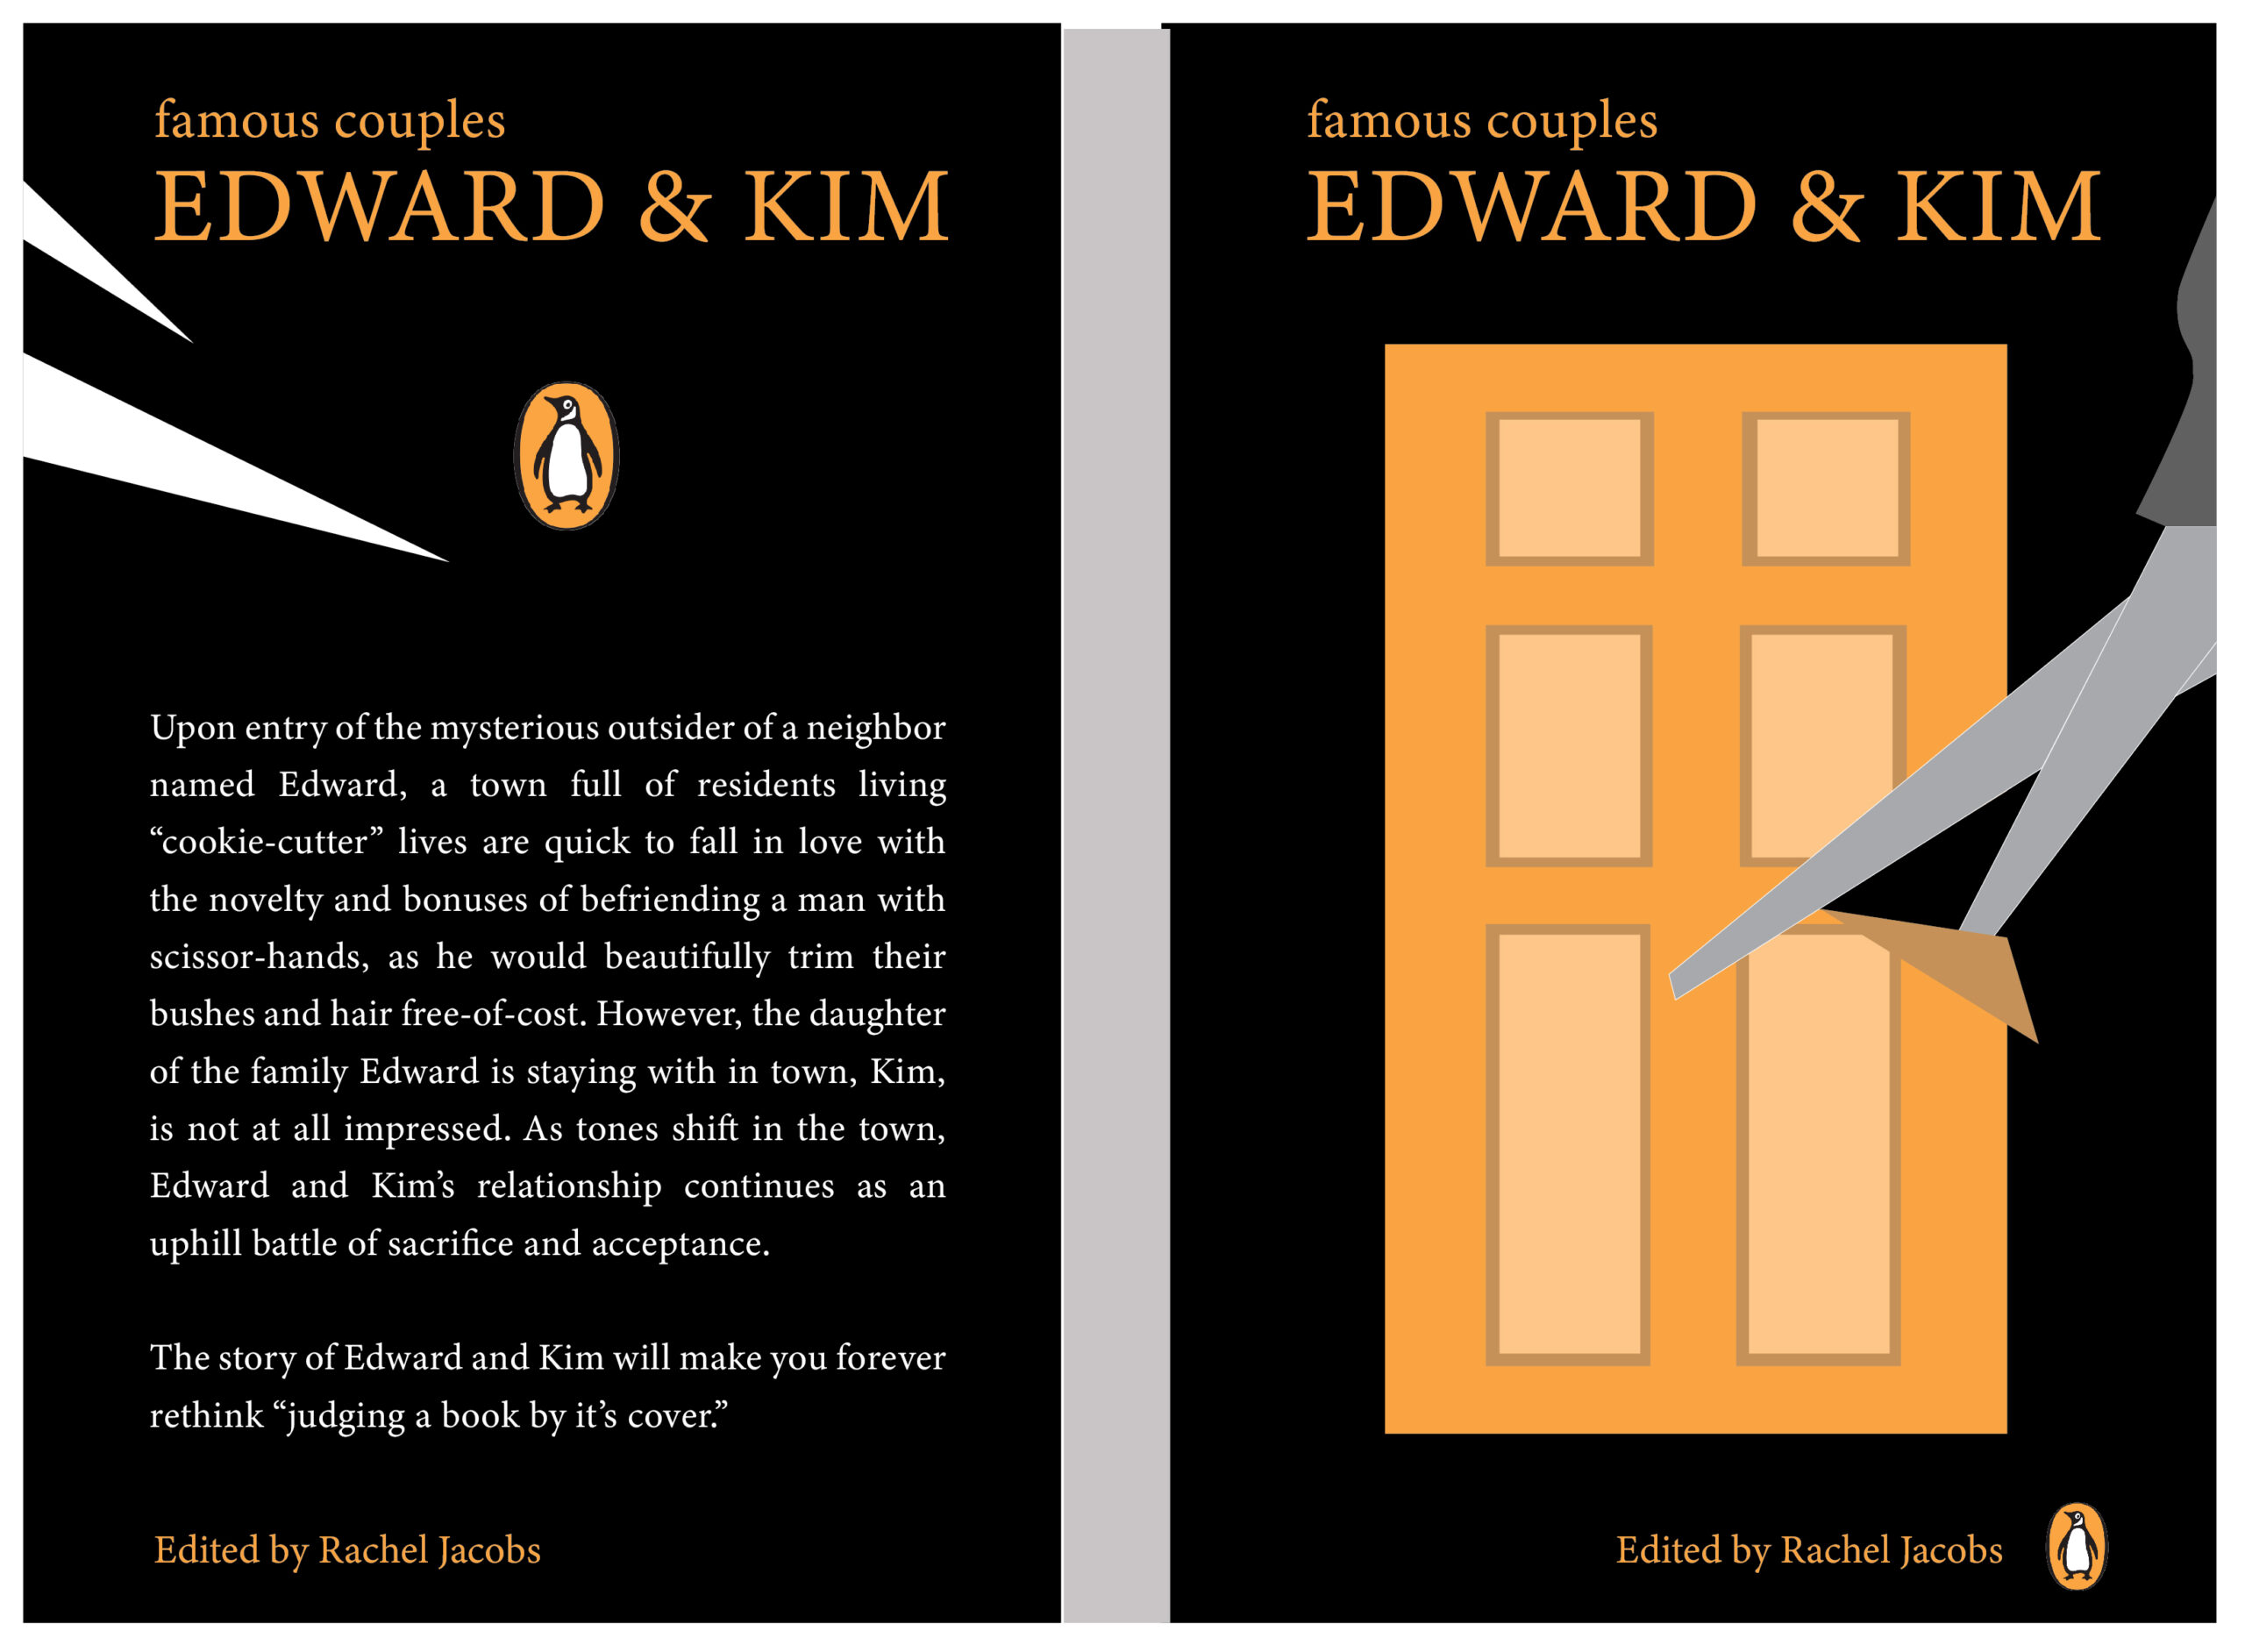 Edward-Kim-Book-Cover-Concept-Ideas-04